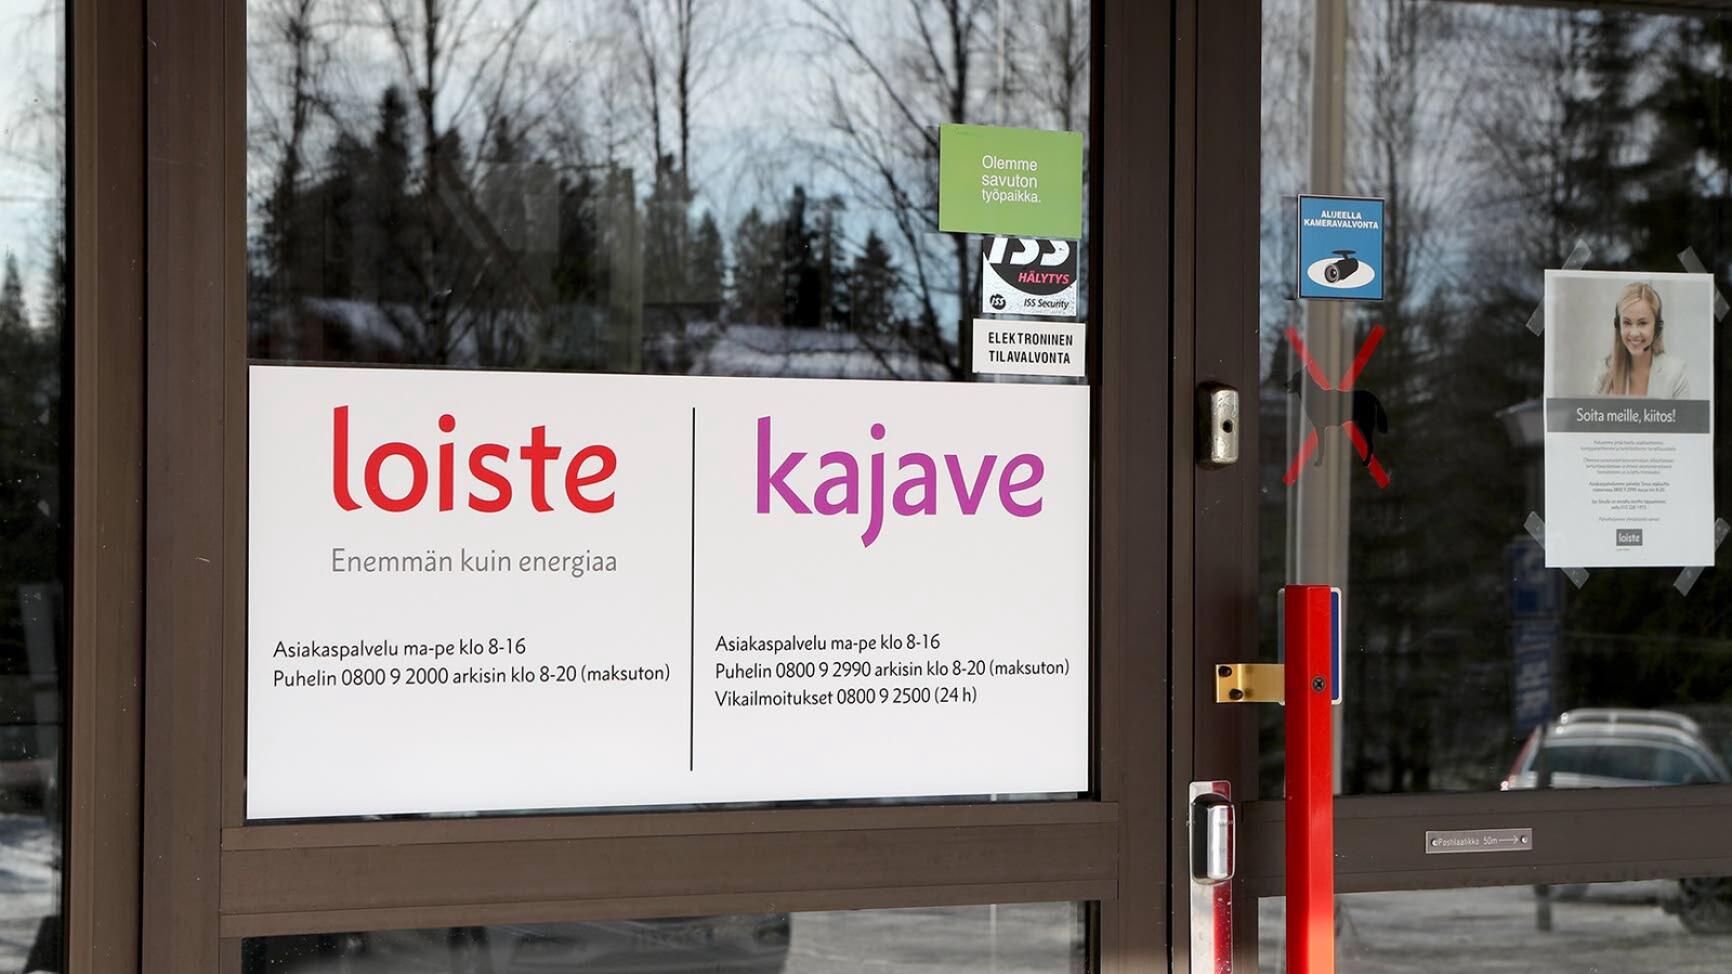 Pikkufirma teki Kajaanissa jättimäisen liikevoiton – Kitka Gamesin  supermenestys ajoi äärirajoille: ”Koko ajan oltiin veitsenterällä”